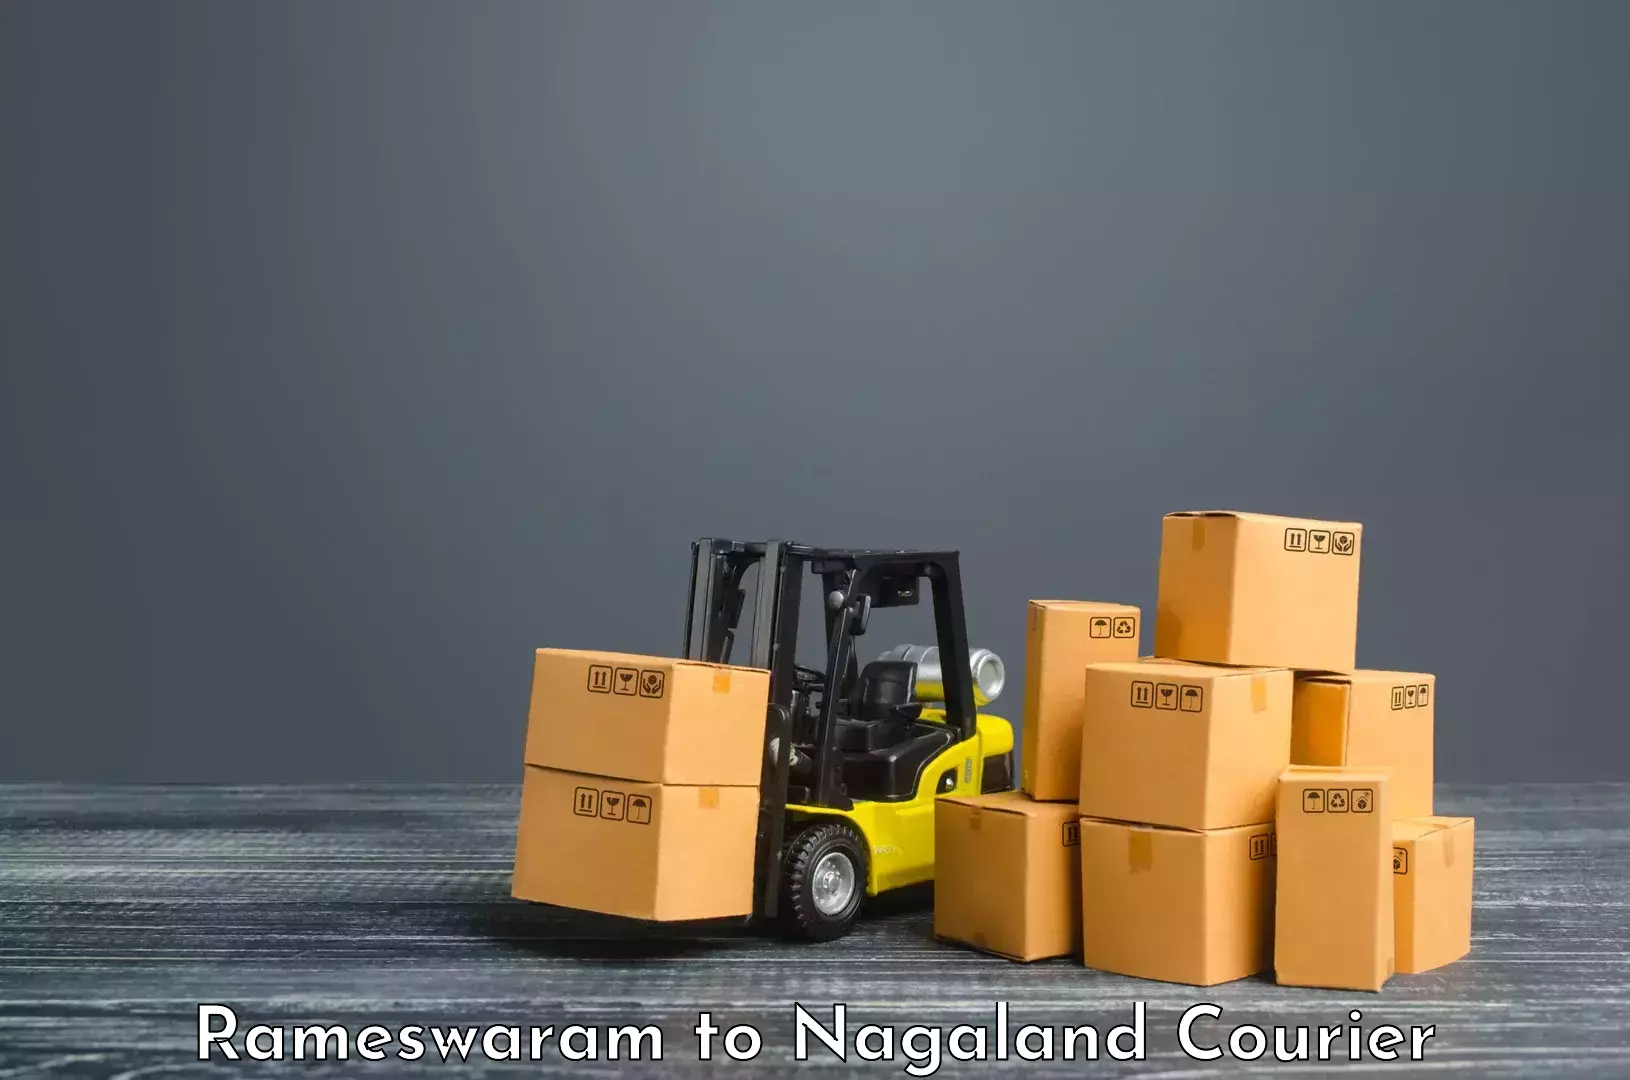 Express logistics service Rameswaram to NIT Nagaland